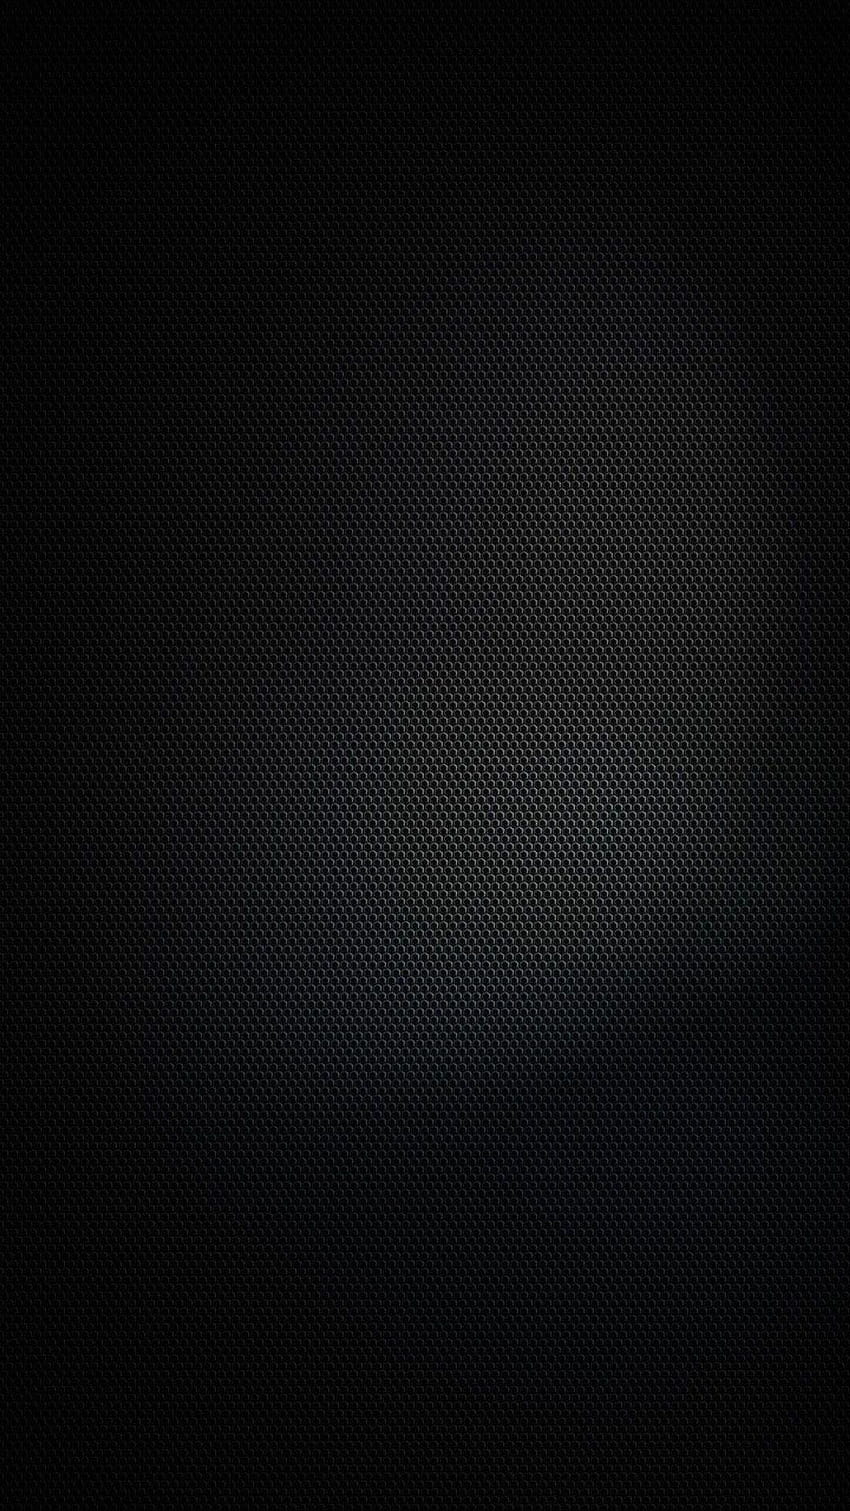 Negro puro, s, android oled black fondo de pantalla del teléfono